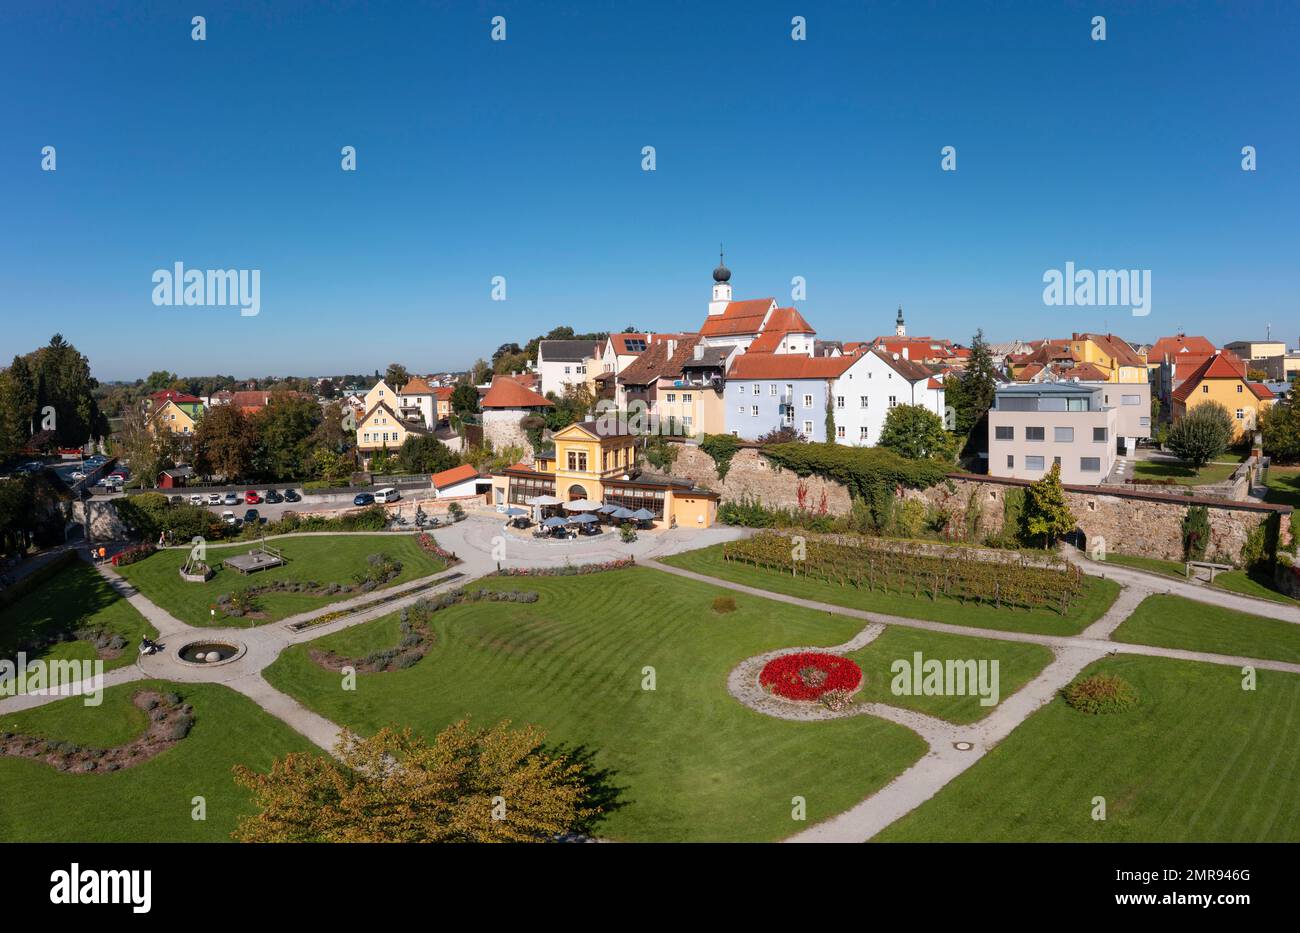 Fucinato, parco, giardino barocco orangery con le mura della città vecchia, Schärding, Innviertel, Austria superiore, Austria, Europa Foto Stock